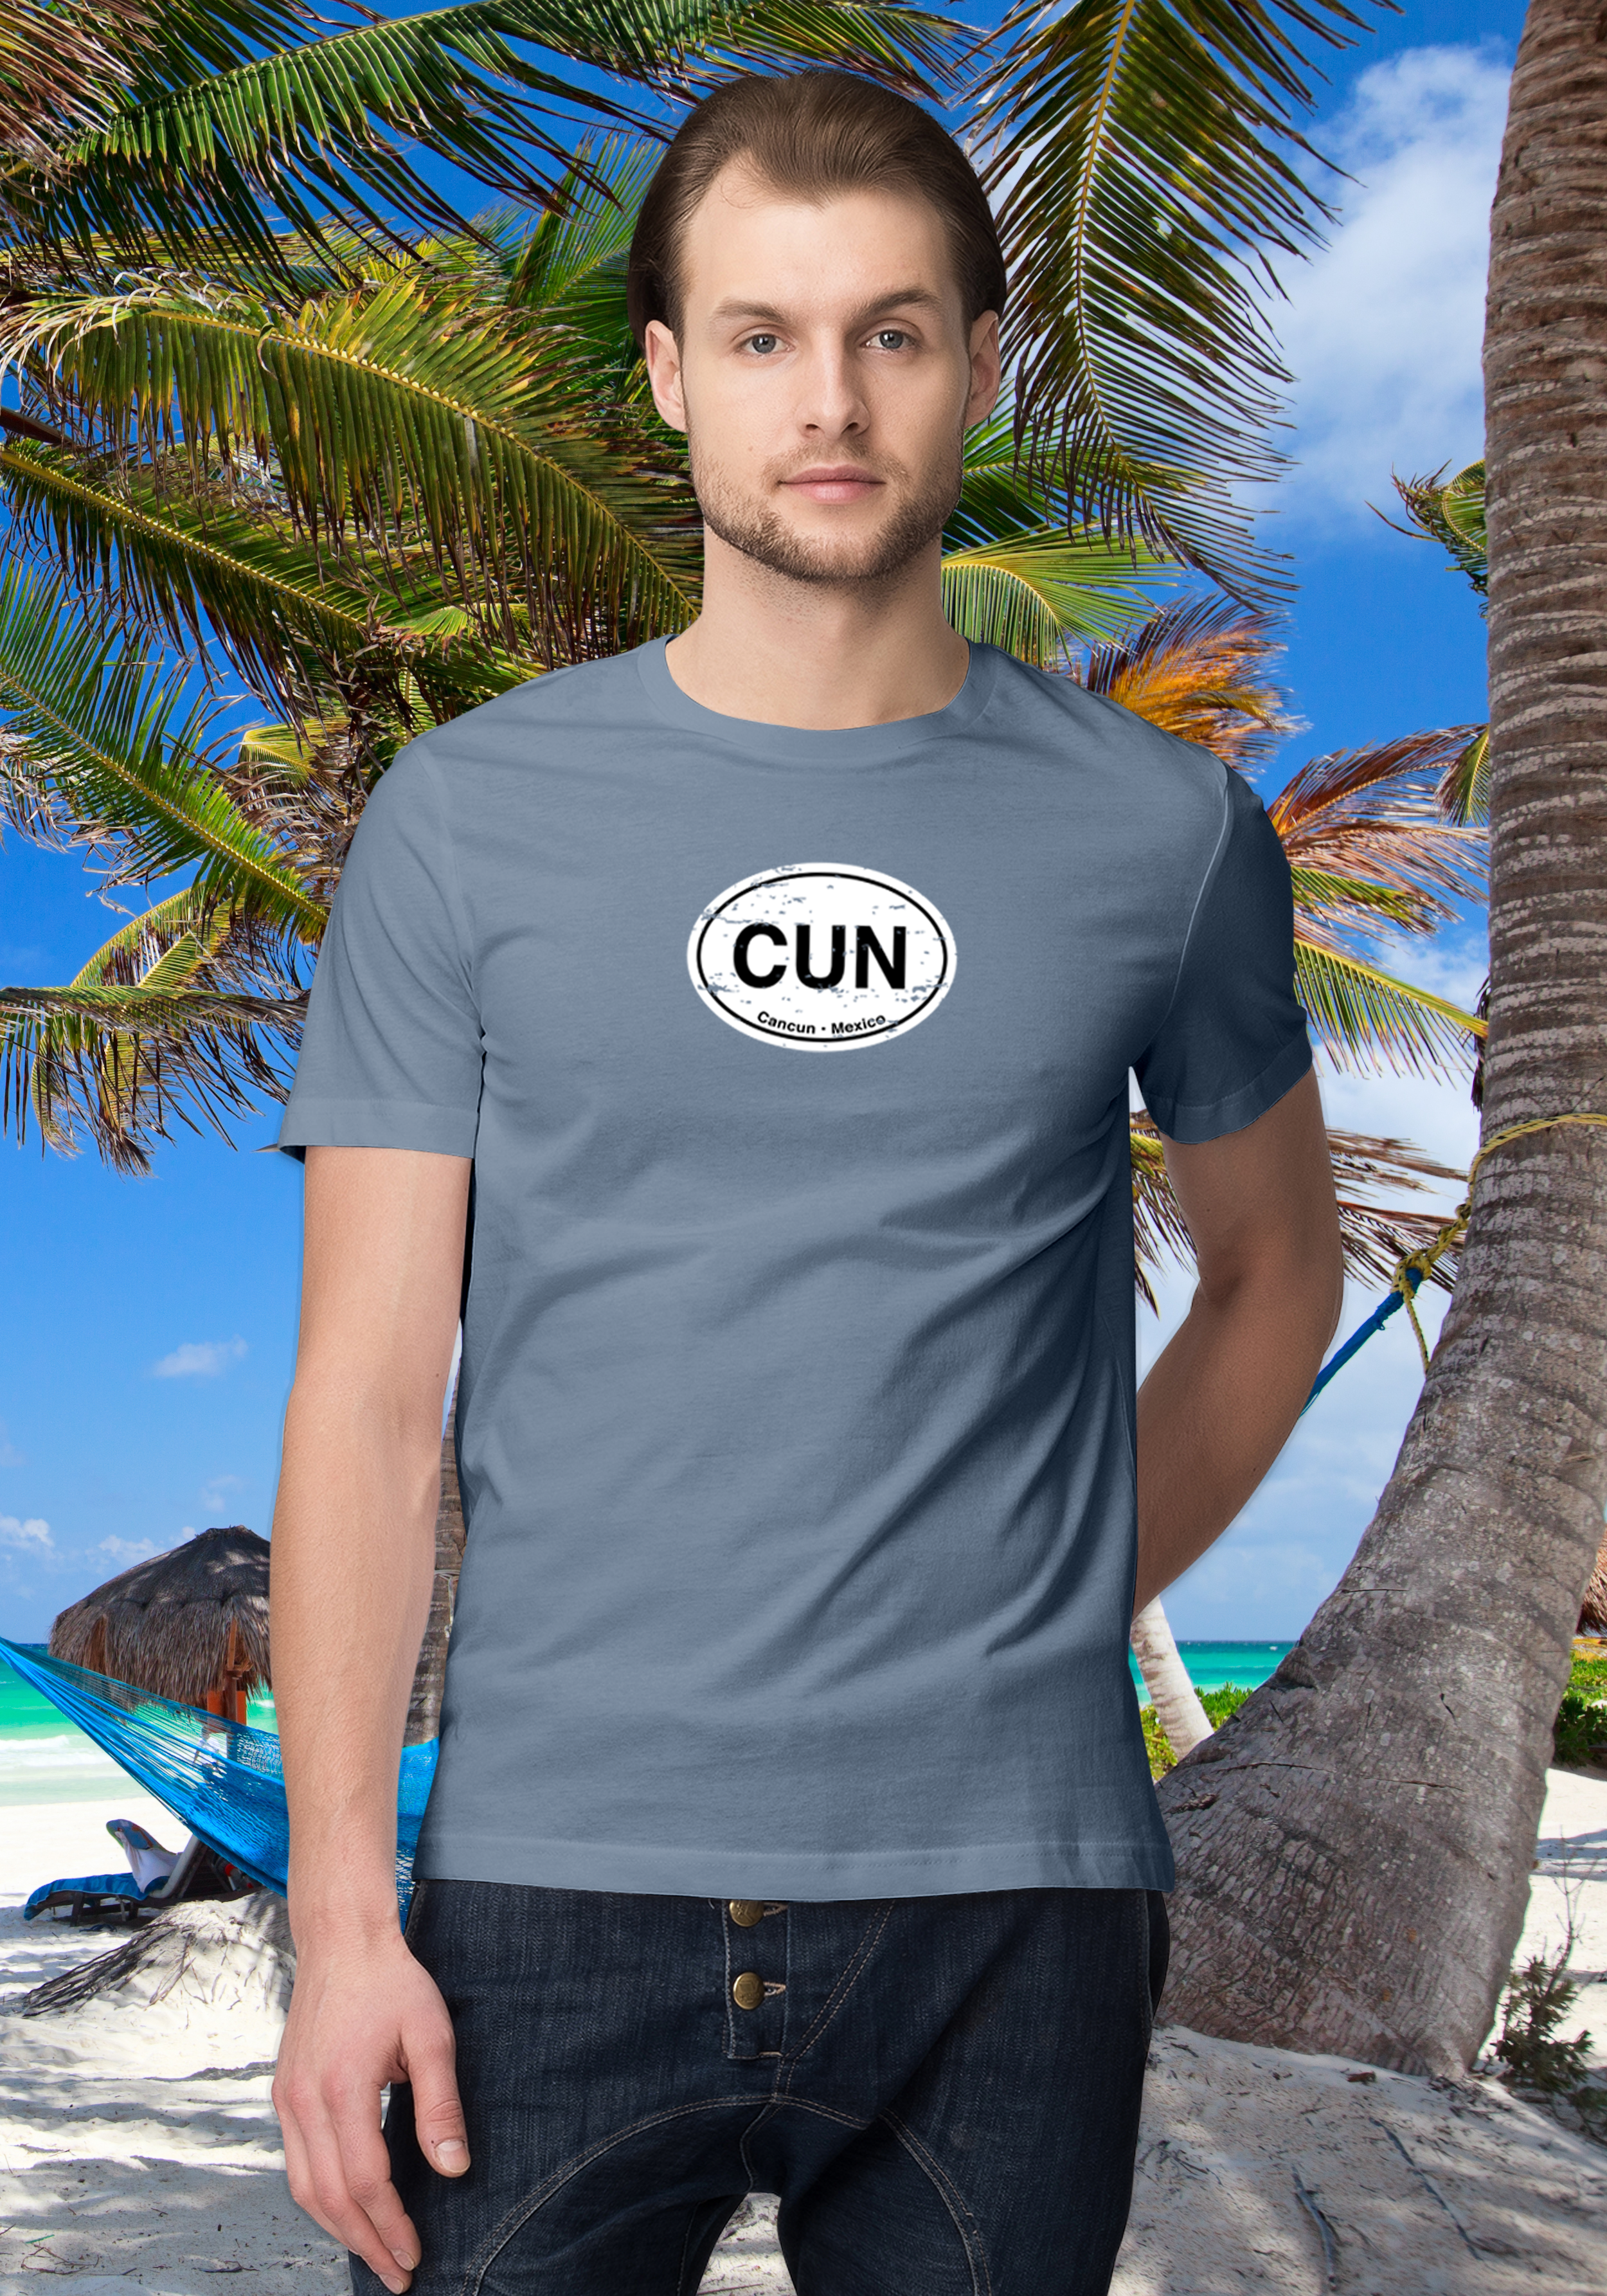 Cancun Men's Classic T-Shirt Souvenirs - My Destination Location